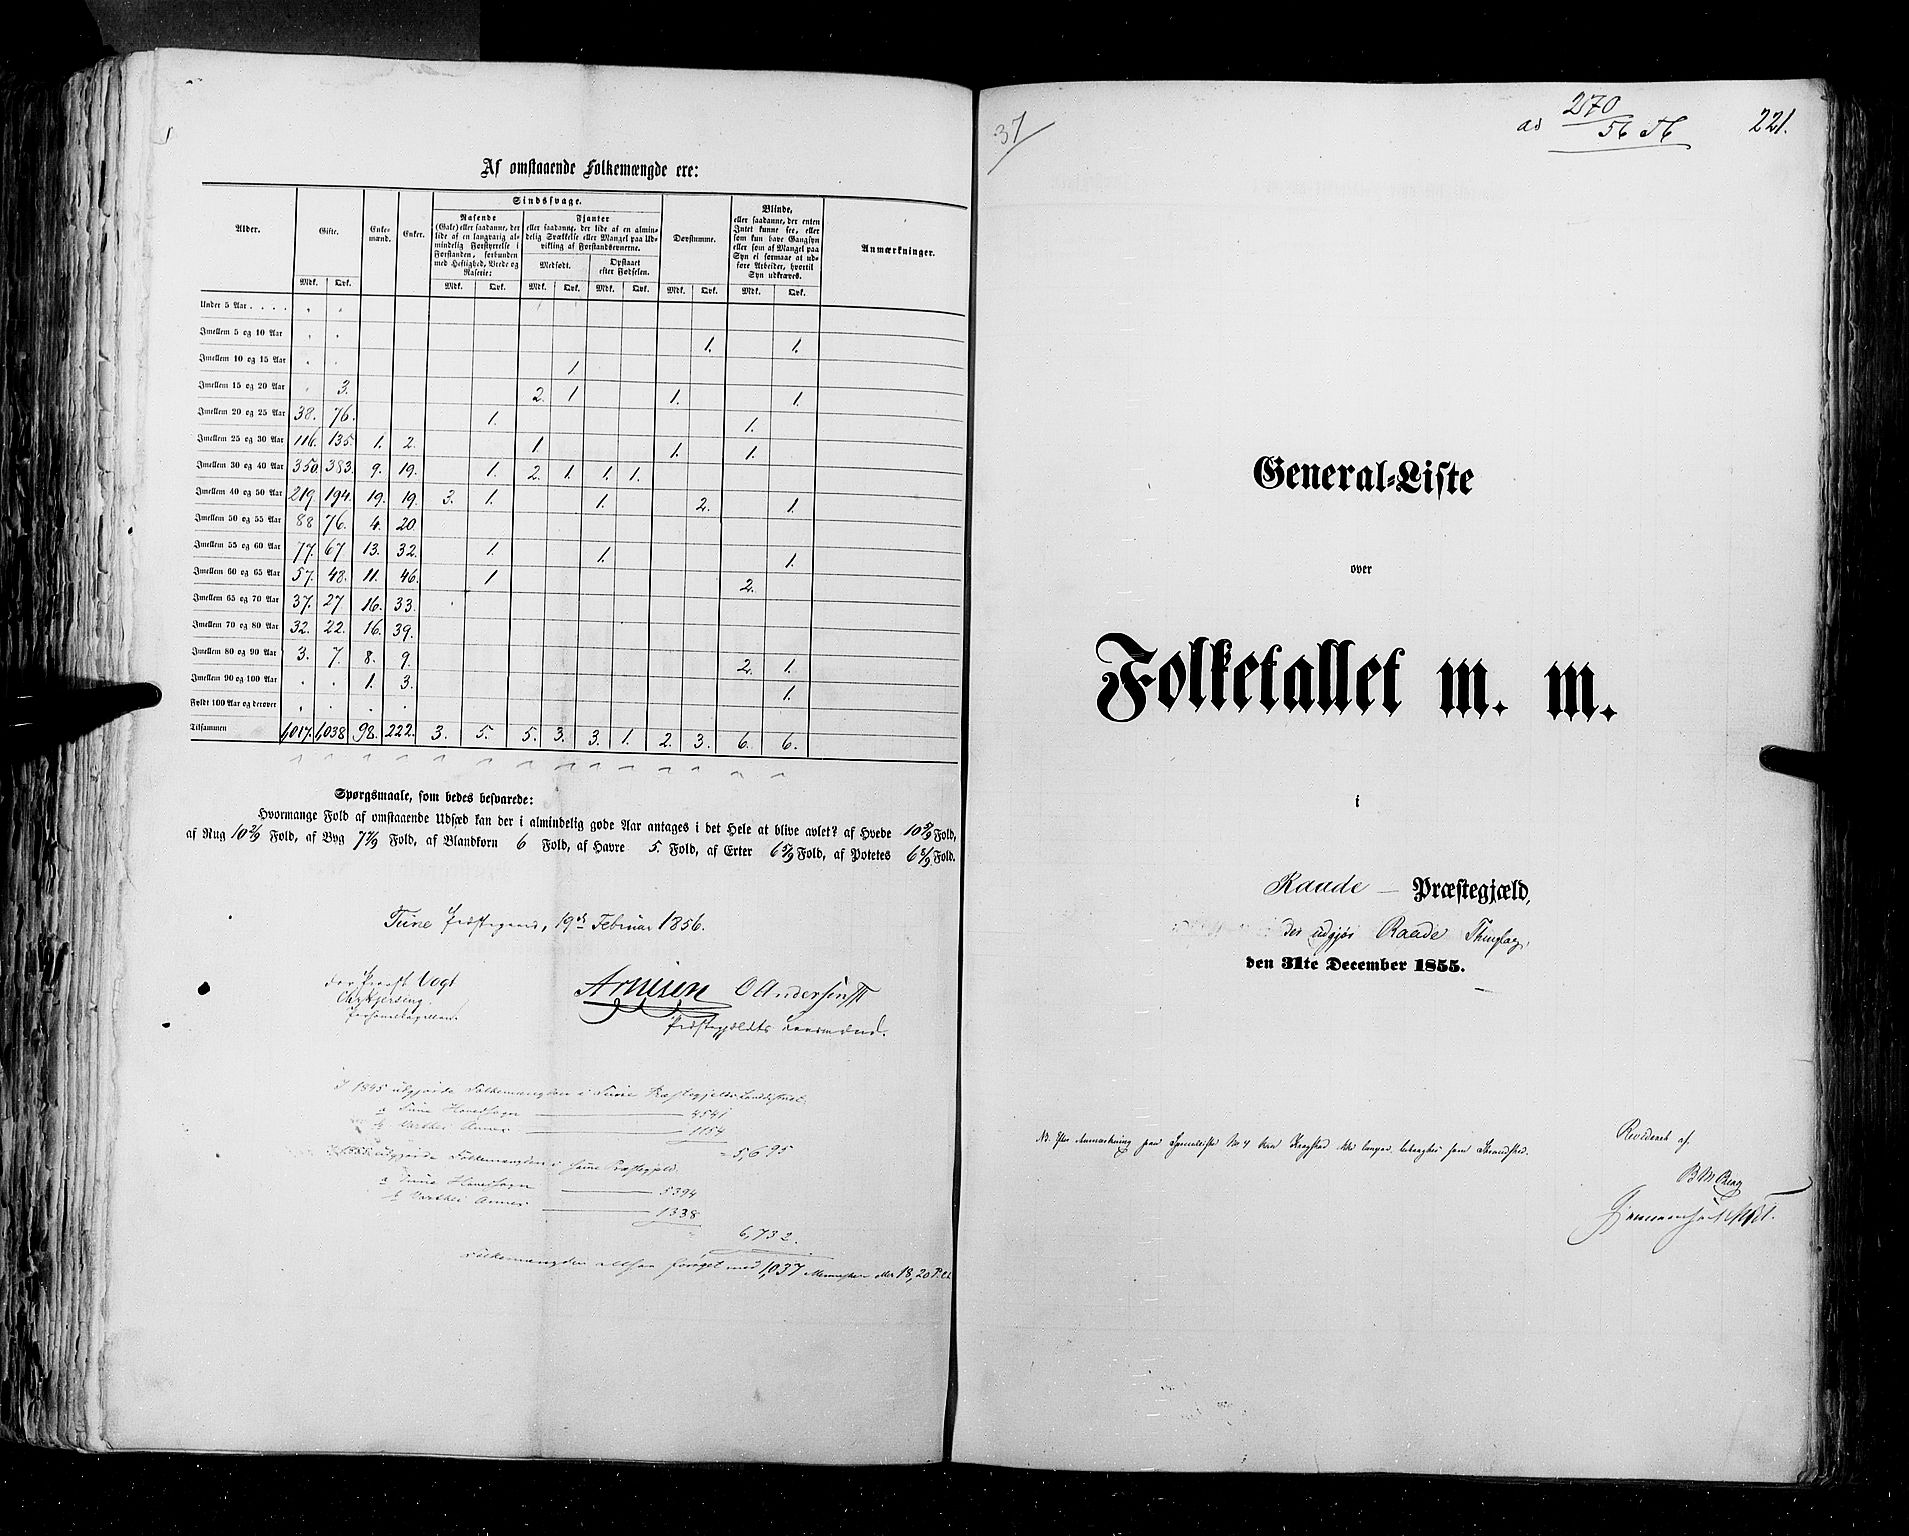 RA, Folketellingen 1855, bind 1: Akershus amt, Smålenenes amt og Hedemarken amt, 1855, s. 221